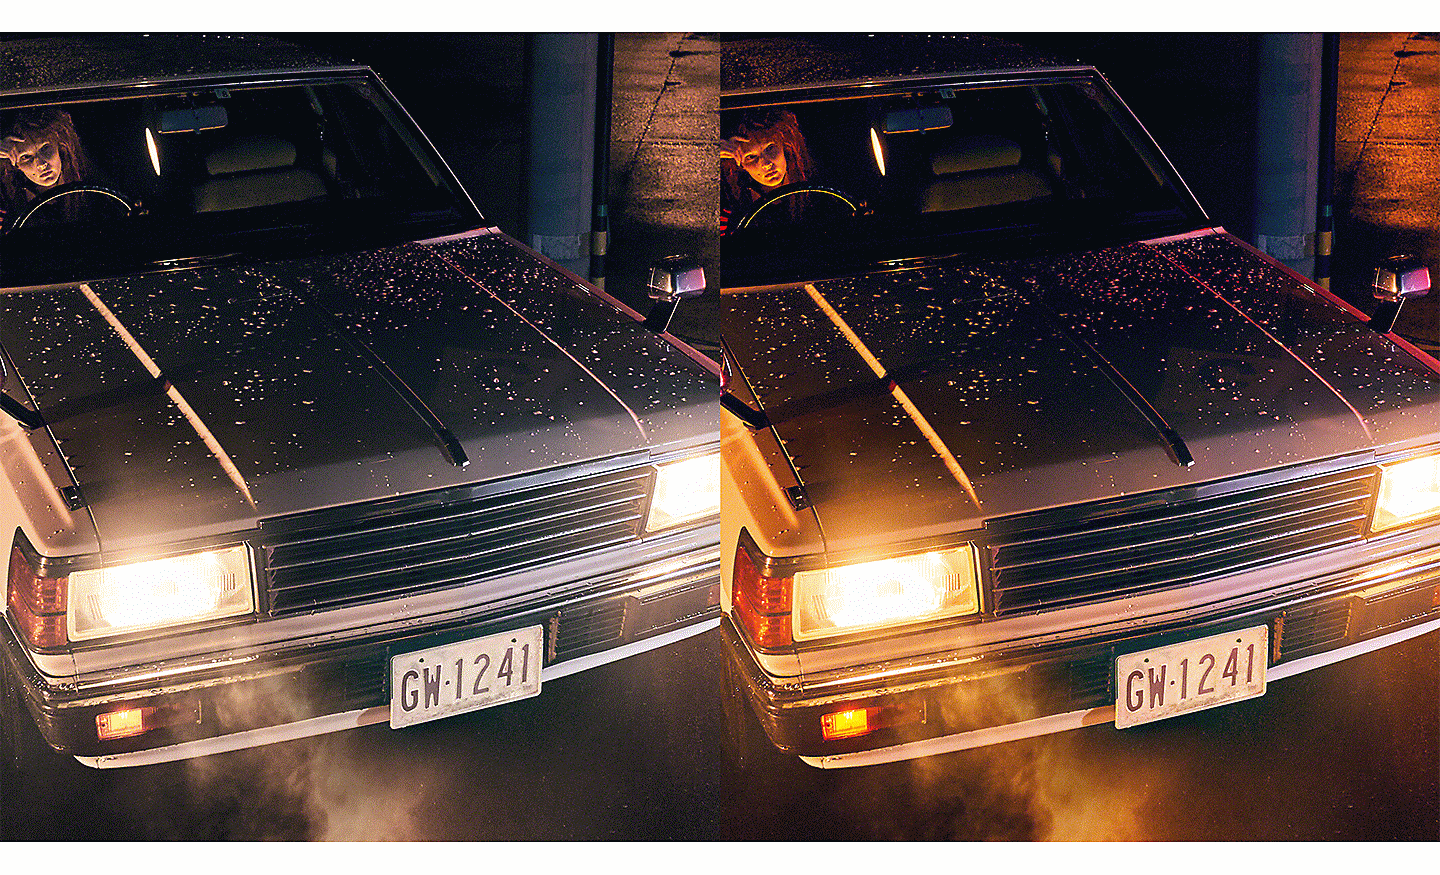 Deux images d’une voiture aux phares allumés, l’une affichant une gradation de couleurs plus lisse que l’autre.